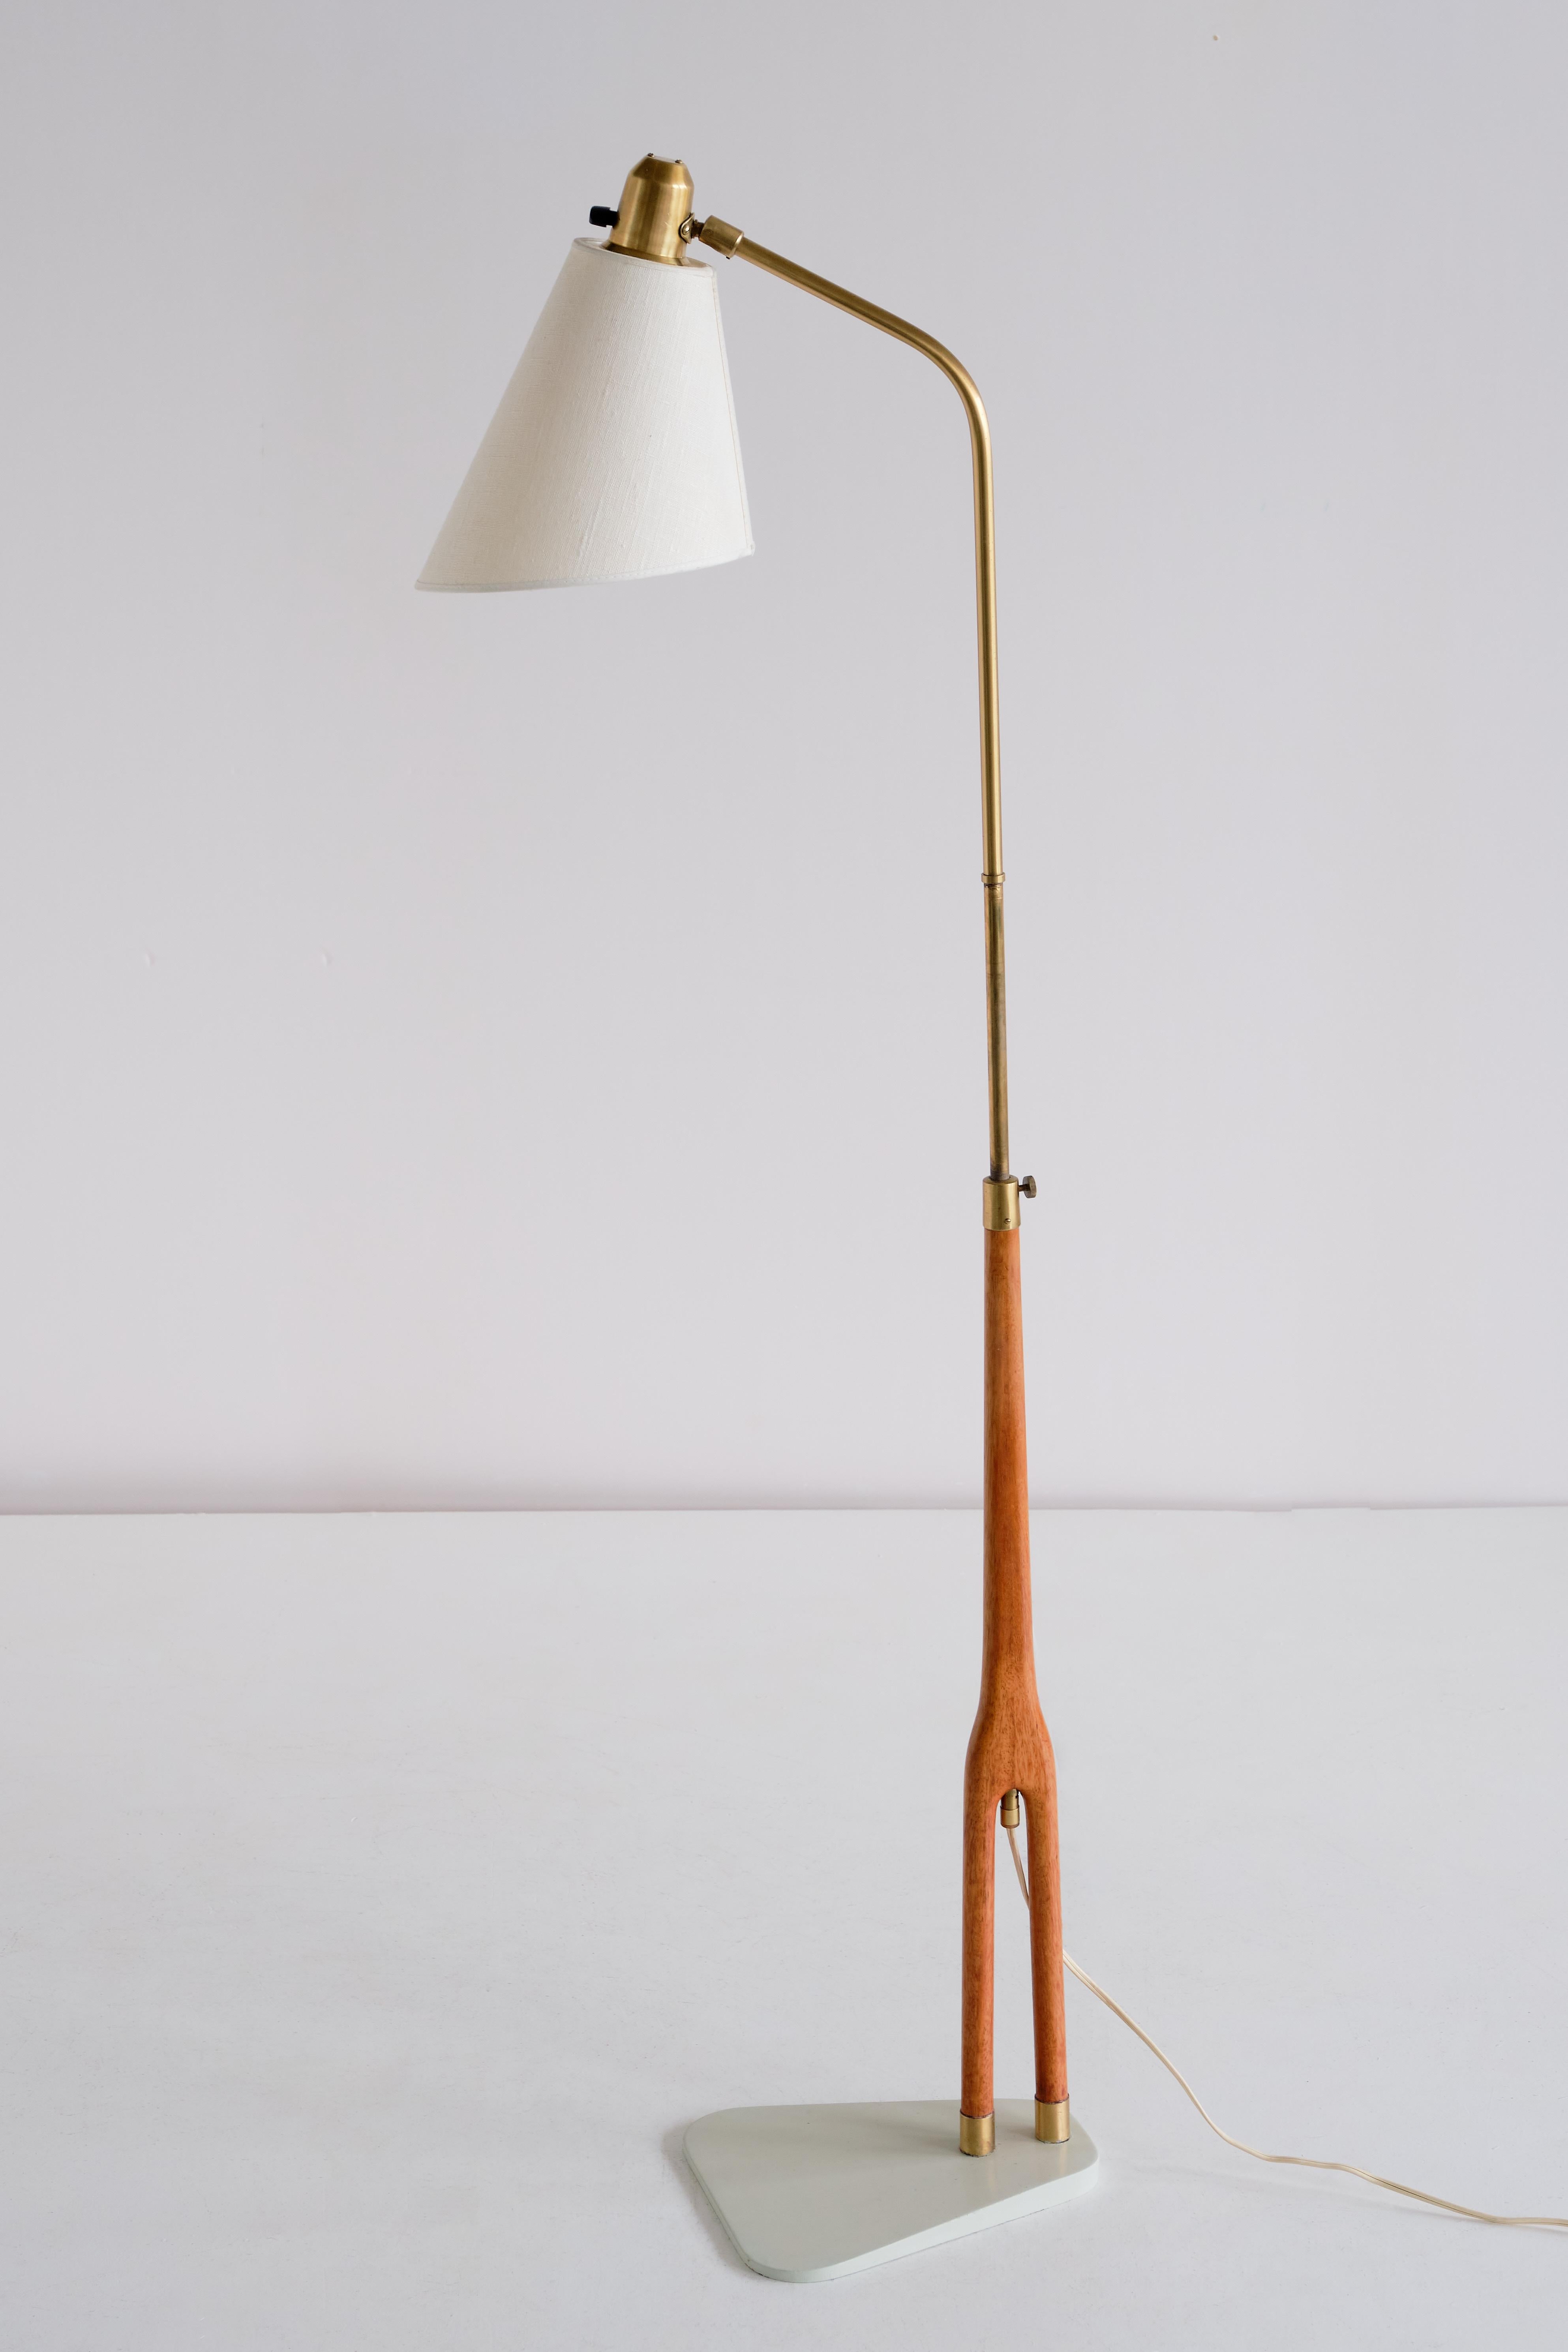 Hans Bergström Floor Lamp in Teak and Brass, ASEA, Sweden, 1950s For Sale 2